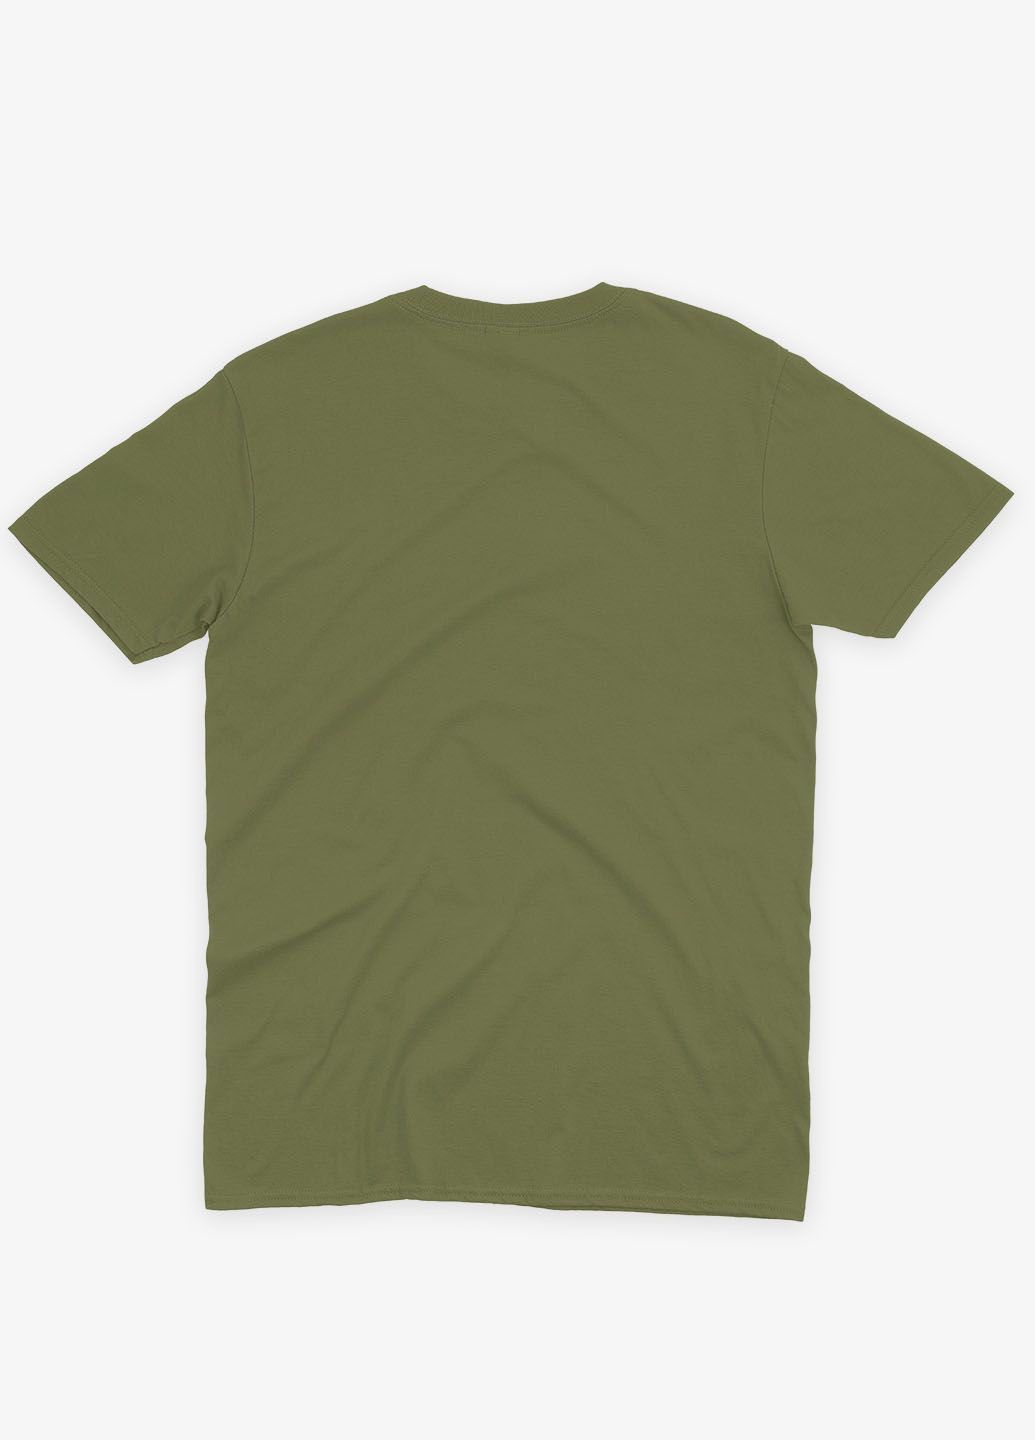 Хаки (оливковая) мужская футболка с принтом супергероя - человек-паук (ts001-1-hgr-006-014-014) Modno